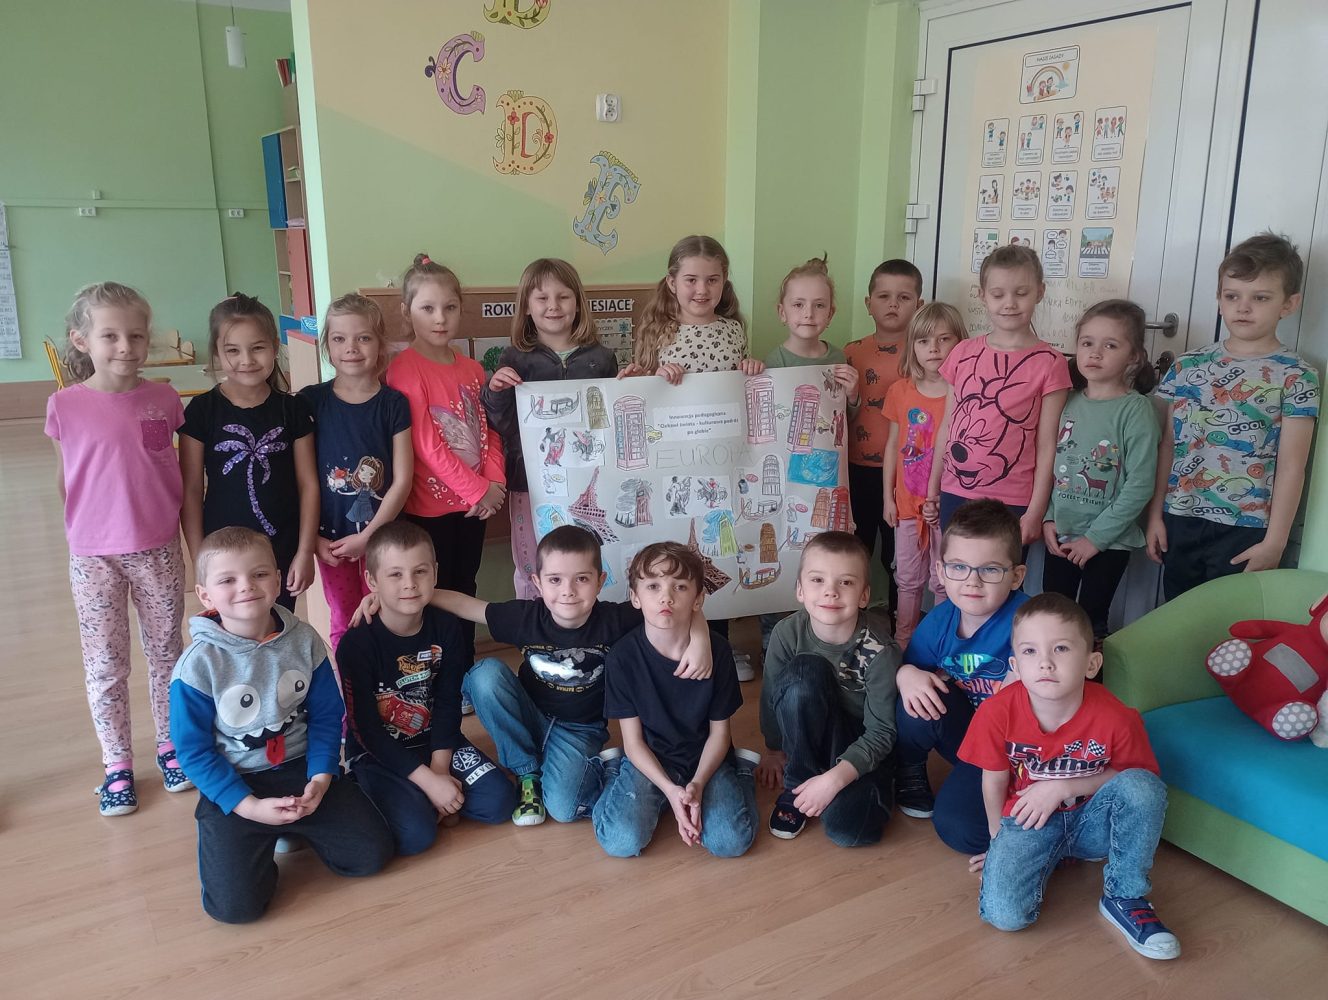 Na zdjęciu widać 19 dzieci na tle kolorowej ściany. Dzieci prezentują plakat przedstawiający informacje na temat Europy. W tle widać drzwi, ścianę i tablicę.